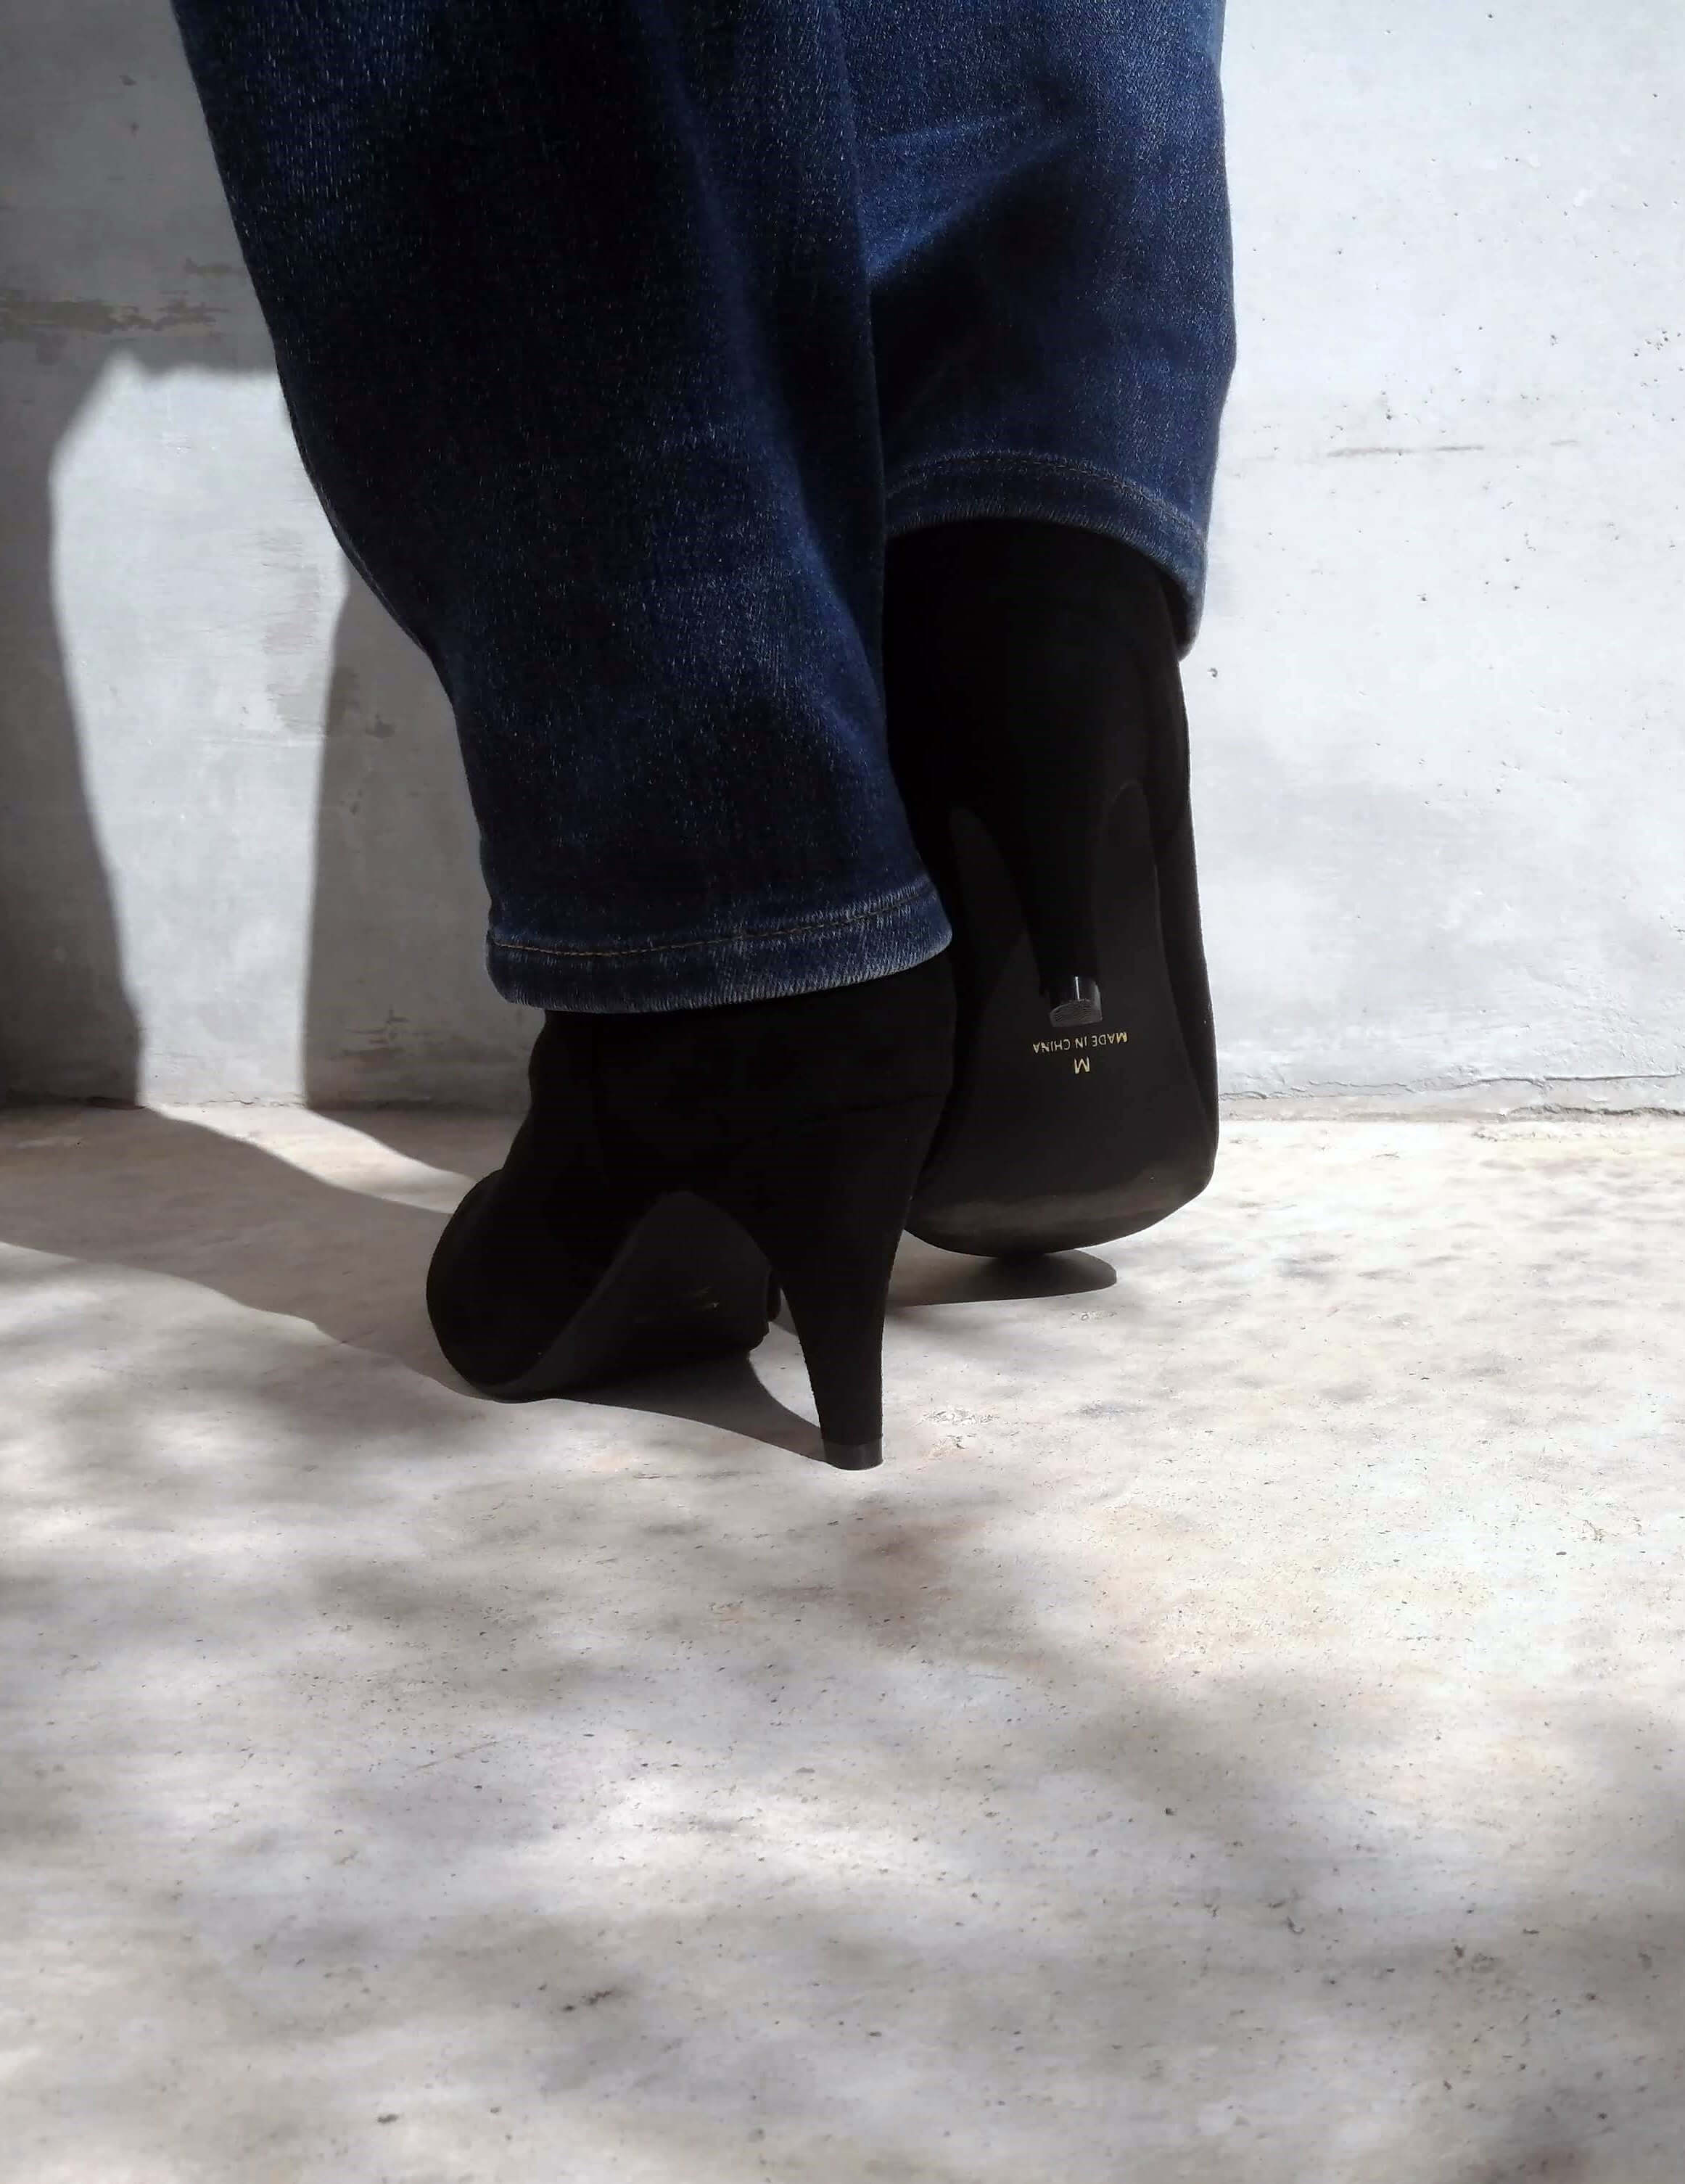 ファッションレビュー】メヌエ 8cmヒール ショートブーツ | これからヘビロテになりそうな予感なブーツの紹介です | 【きに楽】キニラク